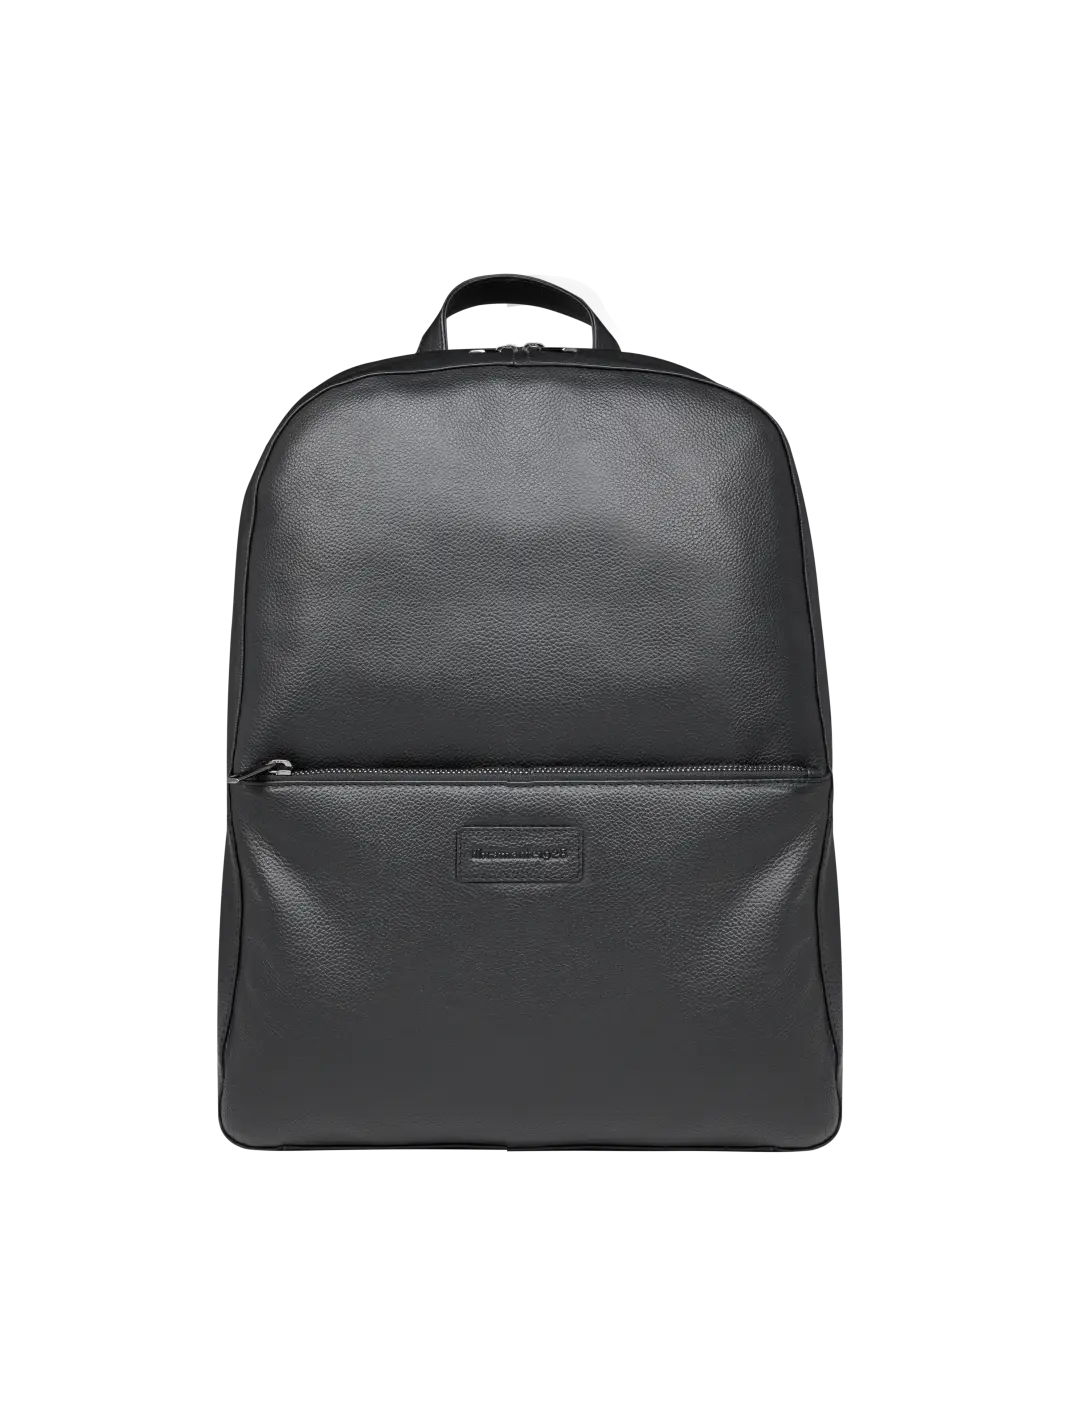 Sonderborg Pebbled Black Backpack